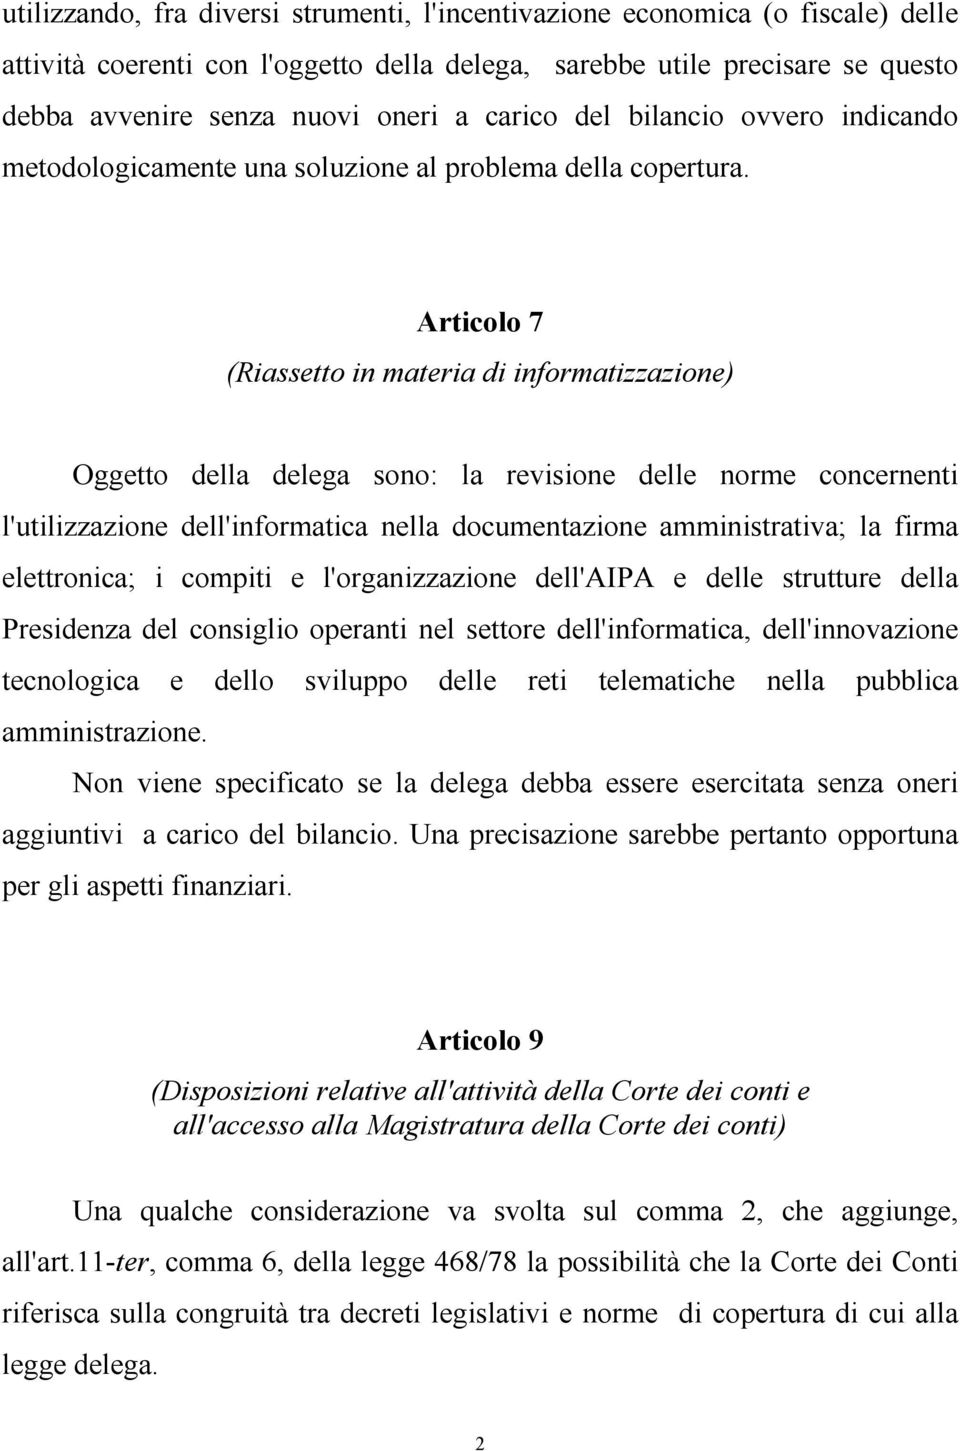 Articolo 7 (Riassetto in materia di informatizzazione) Oggetto della delega sono: la revisione delle norme concernenti l'utilizzazione dell'informatica nella documentazione amministrativa; la firma